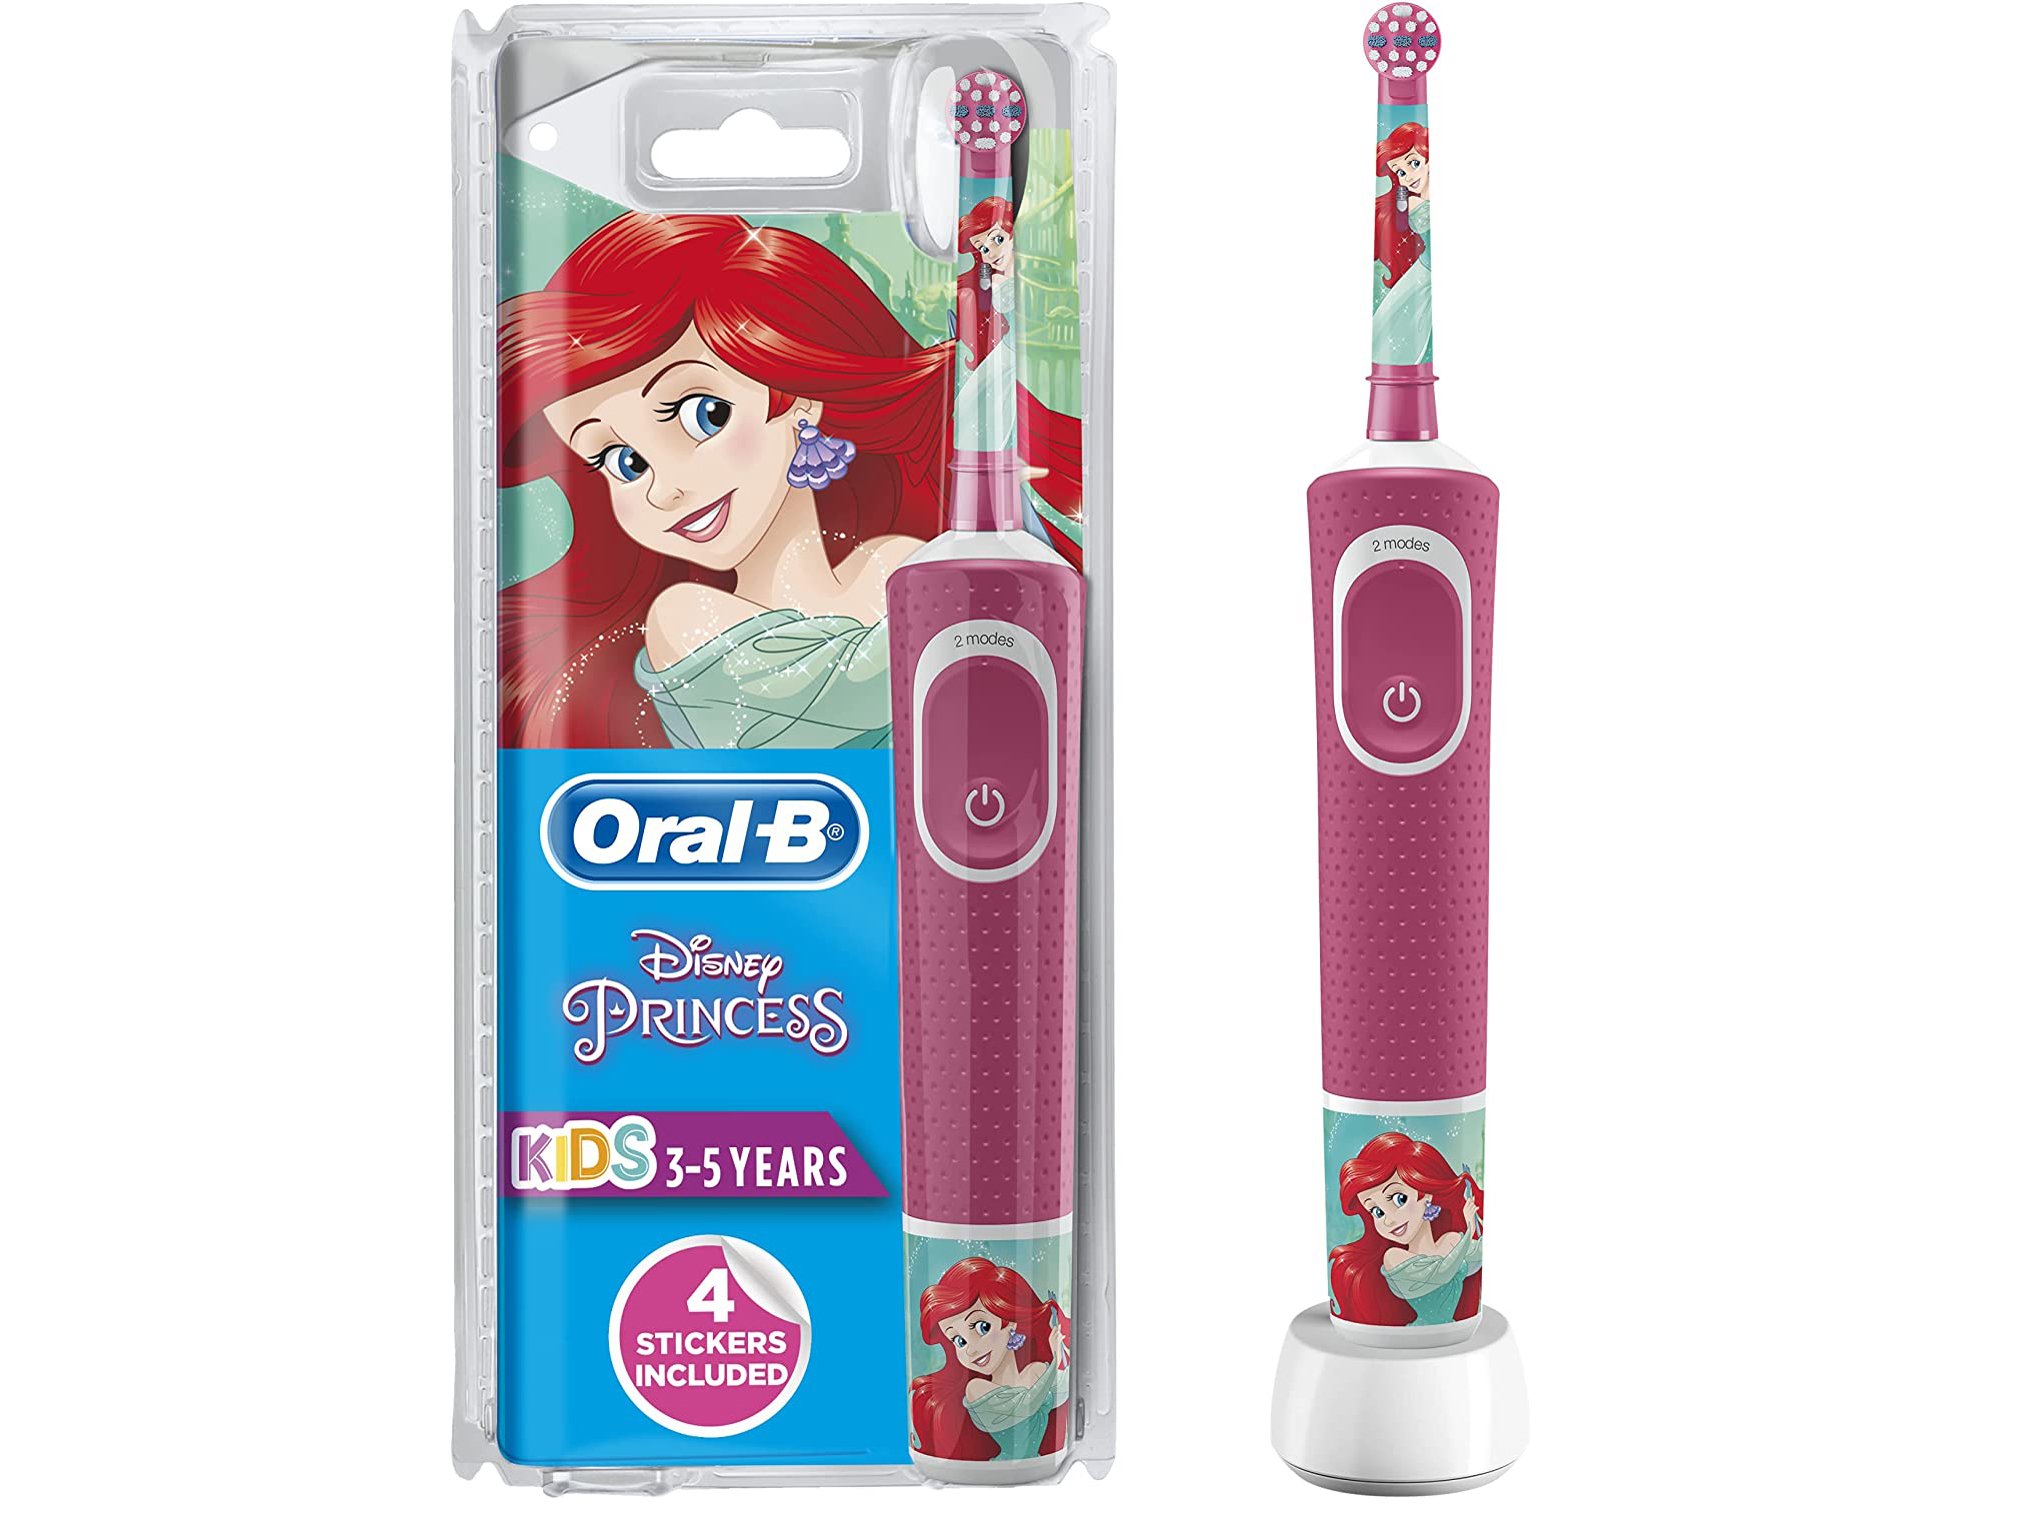 Elektrische Zahnbürste Kinder Test Oral-B Disney